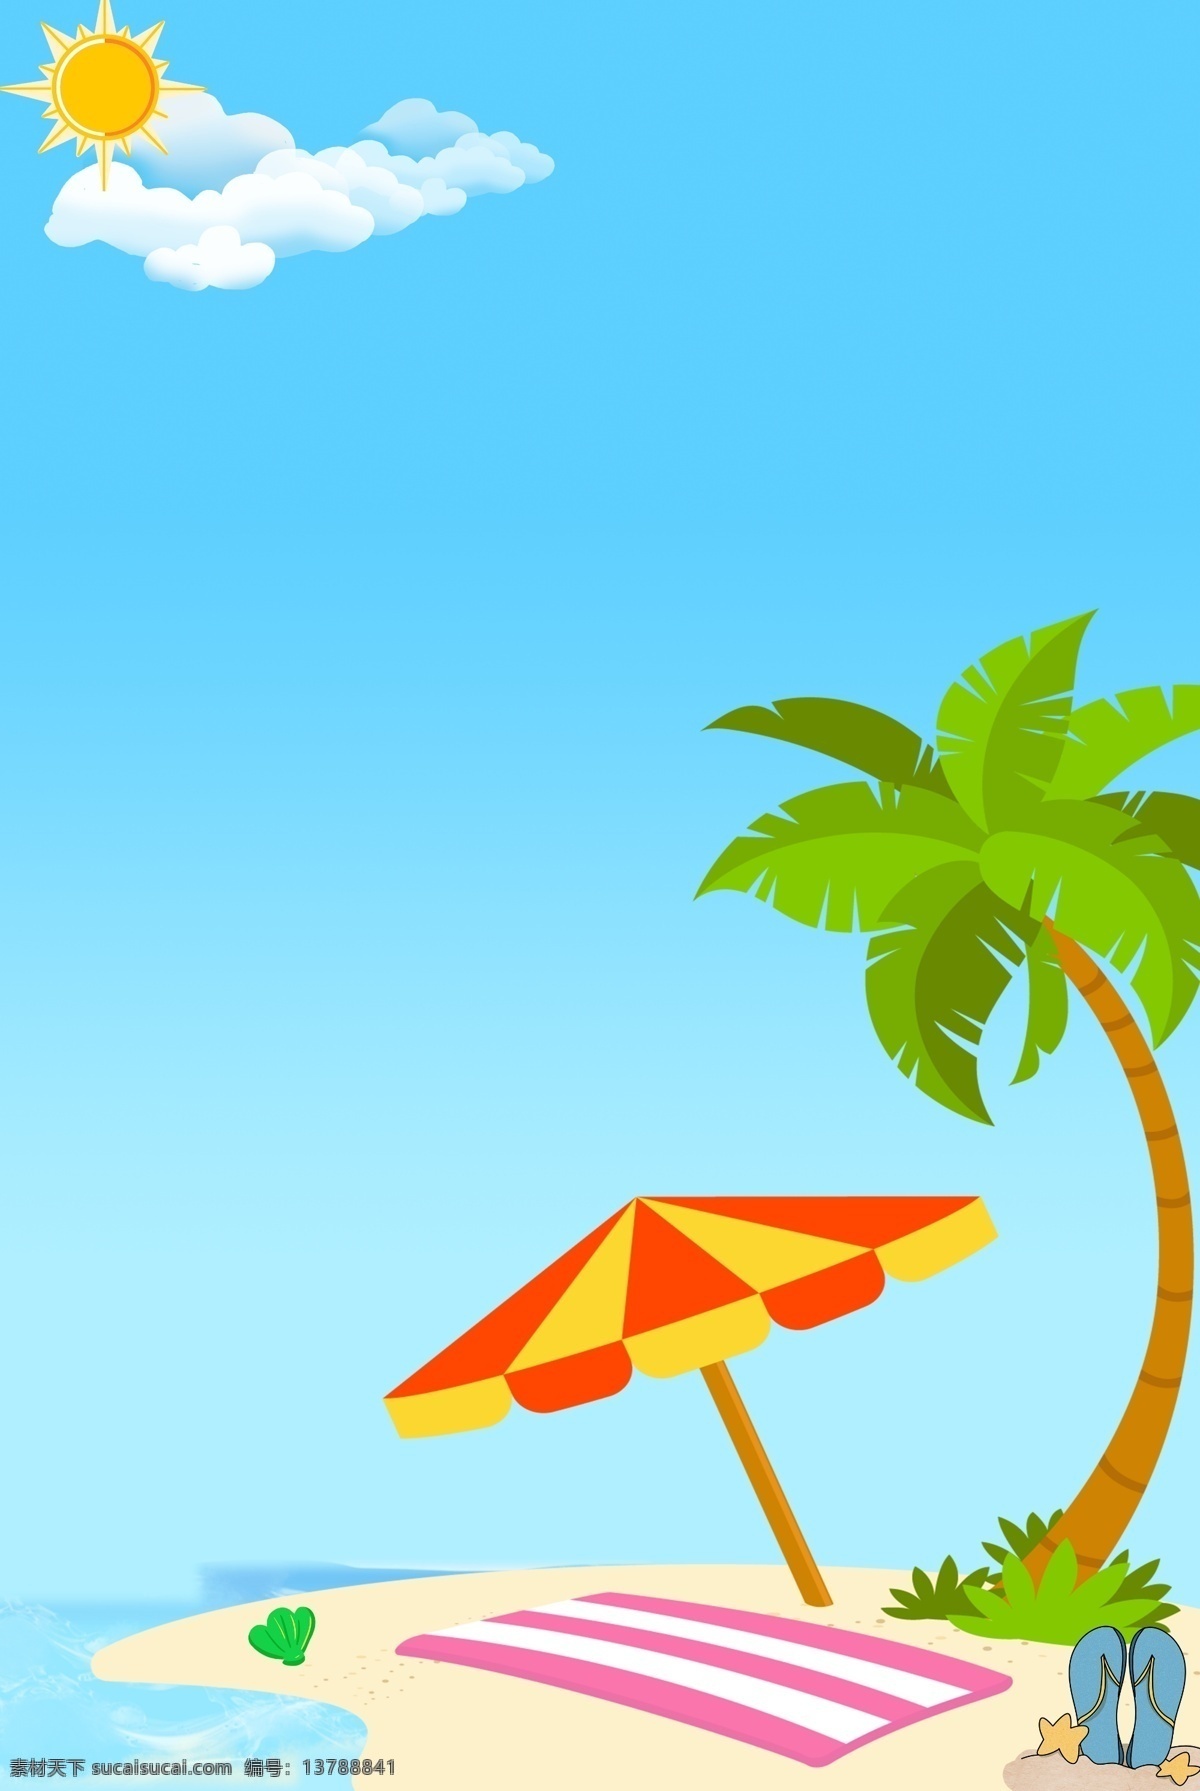 夏日 清爽 海滩 主题 背景 海 天空 太阳 白云 树 拖鞋 伞 蓝色